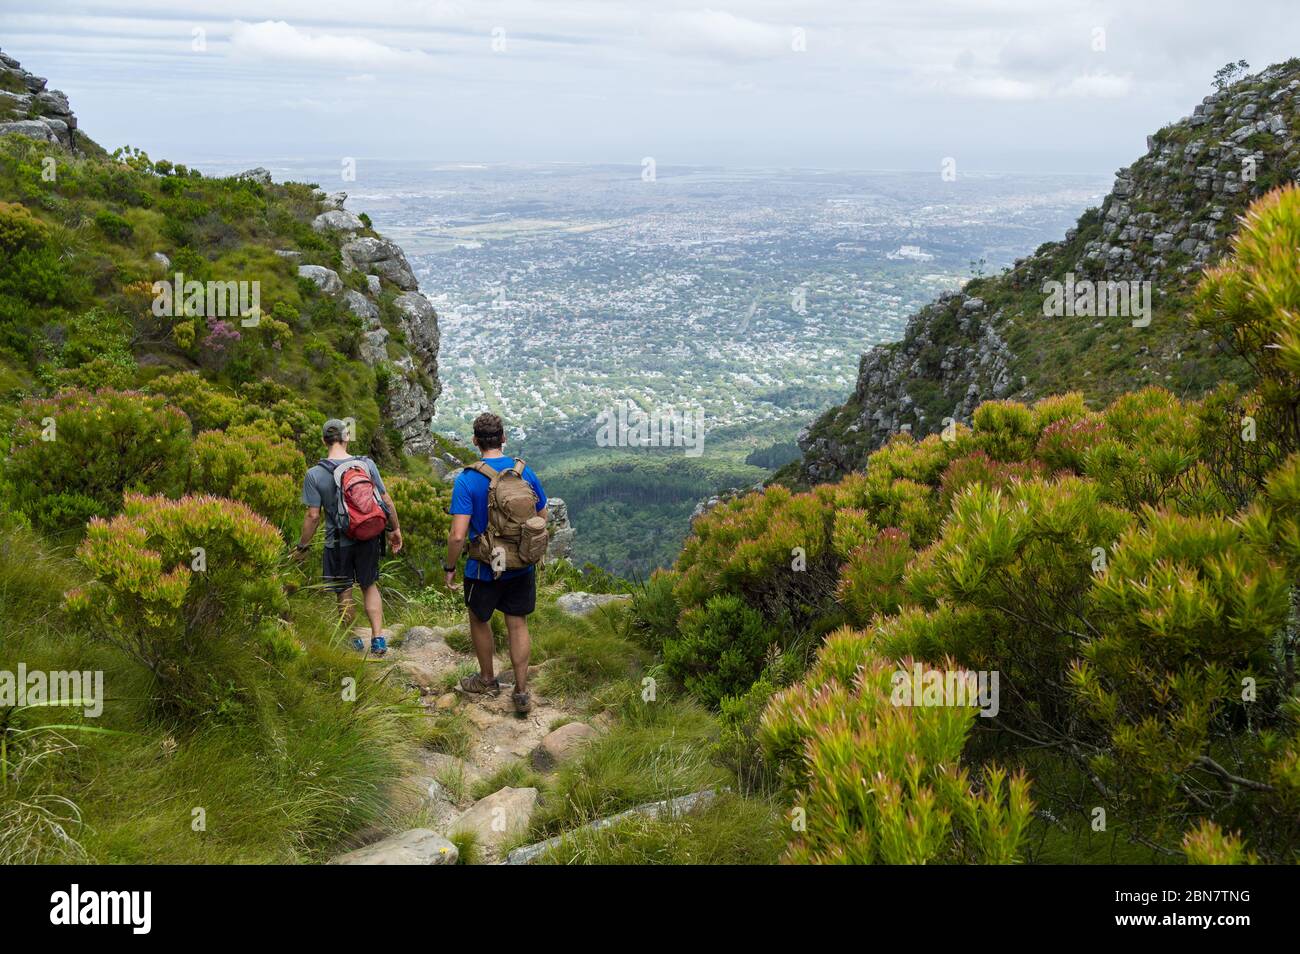 Devils Peak, dans le parc national de Table Mountain, au Cap, en Afrique du Sud, offre des sentiers de randonnée urbains comme cette route via Mowbray Ridge jusqu'à Devil's Peak. Banque D'Images